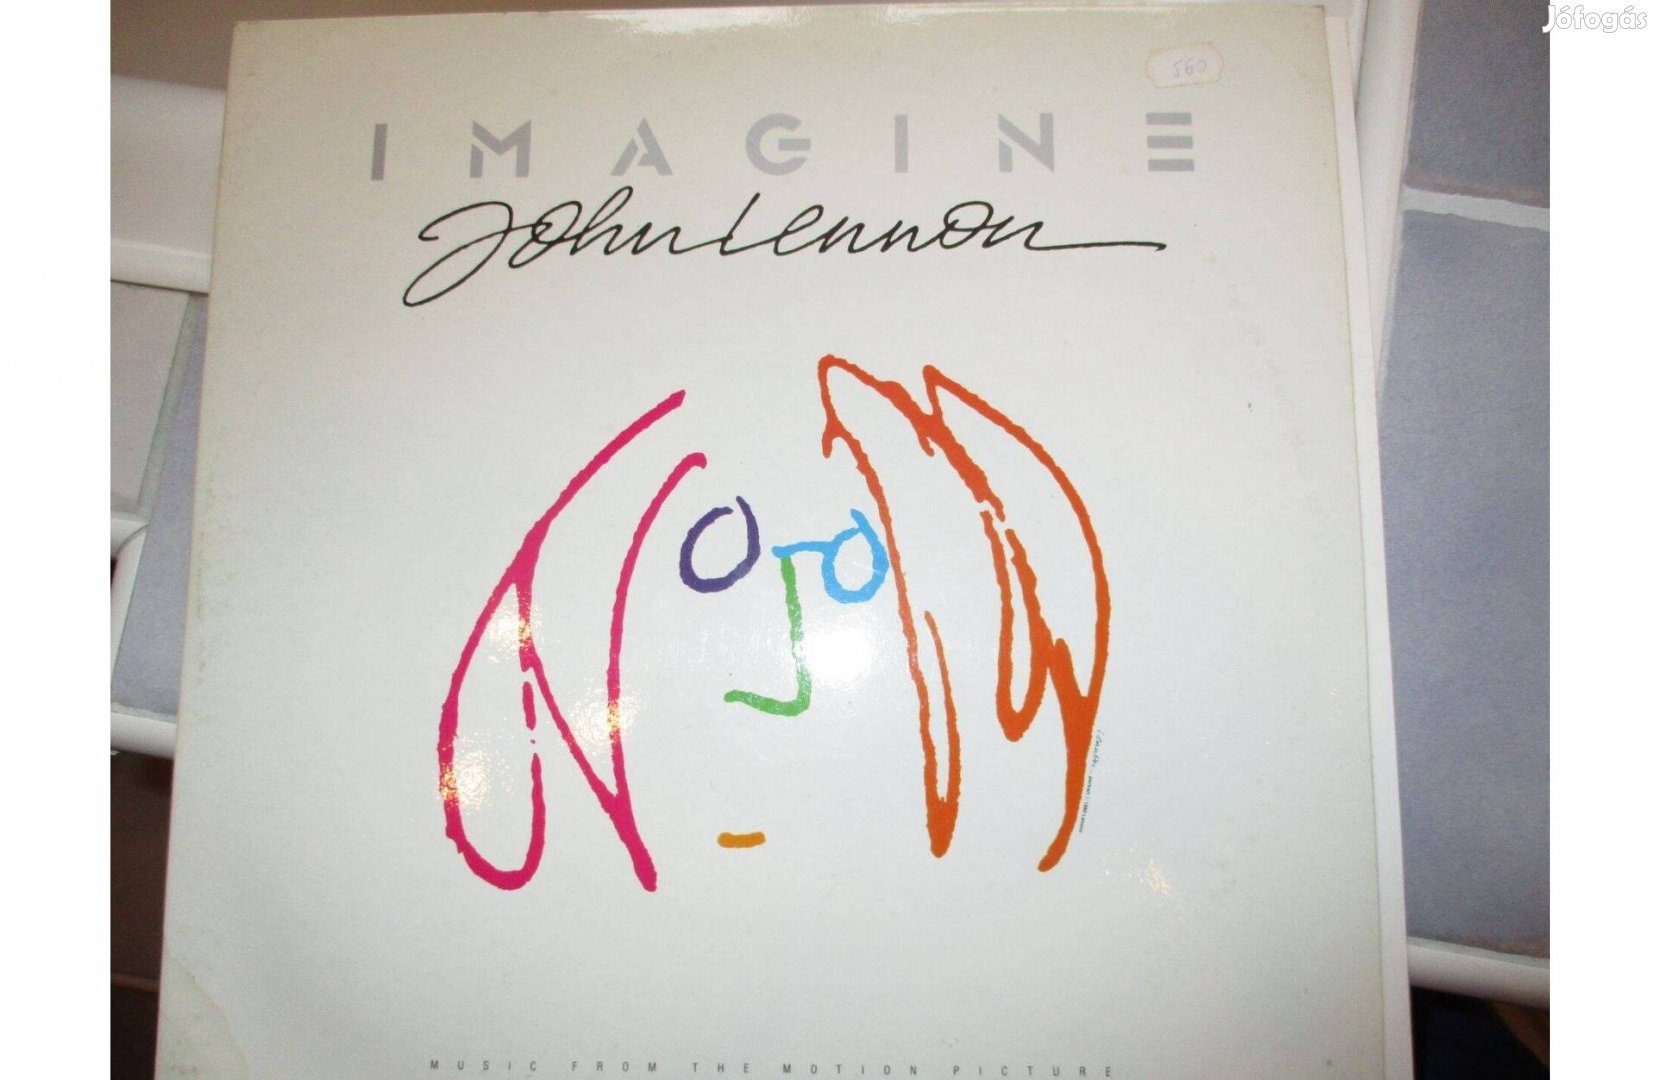 John Lennon bakelit hanglemez album eladó